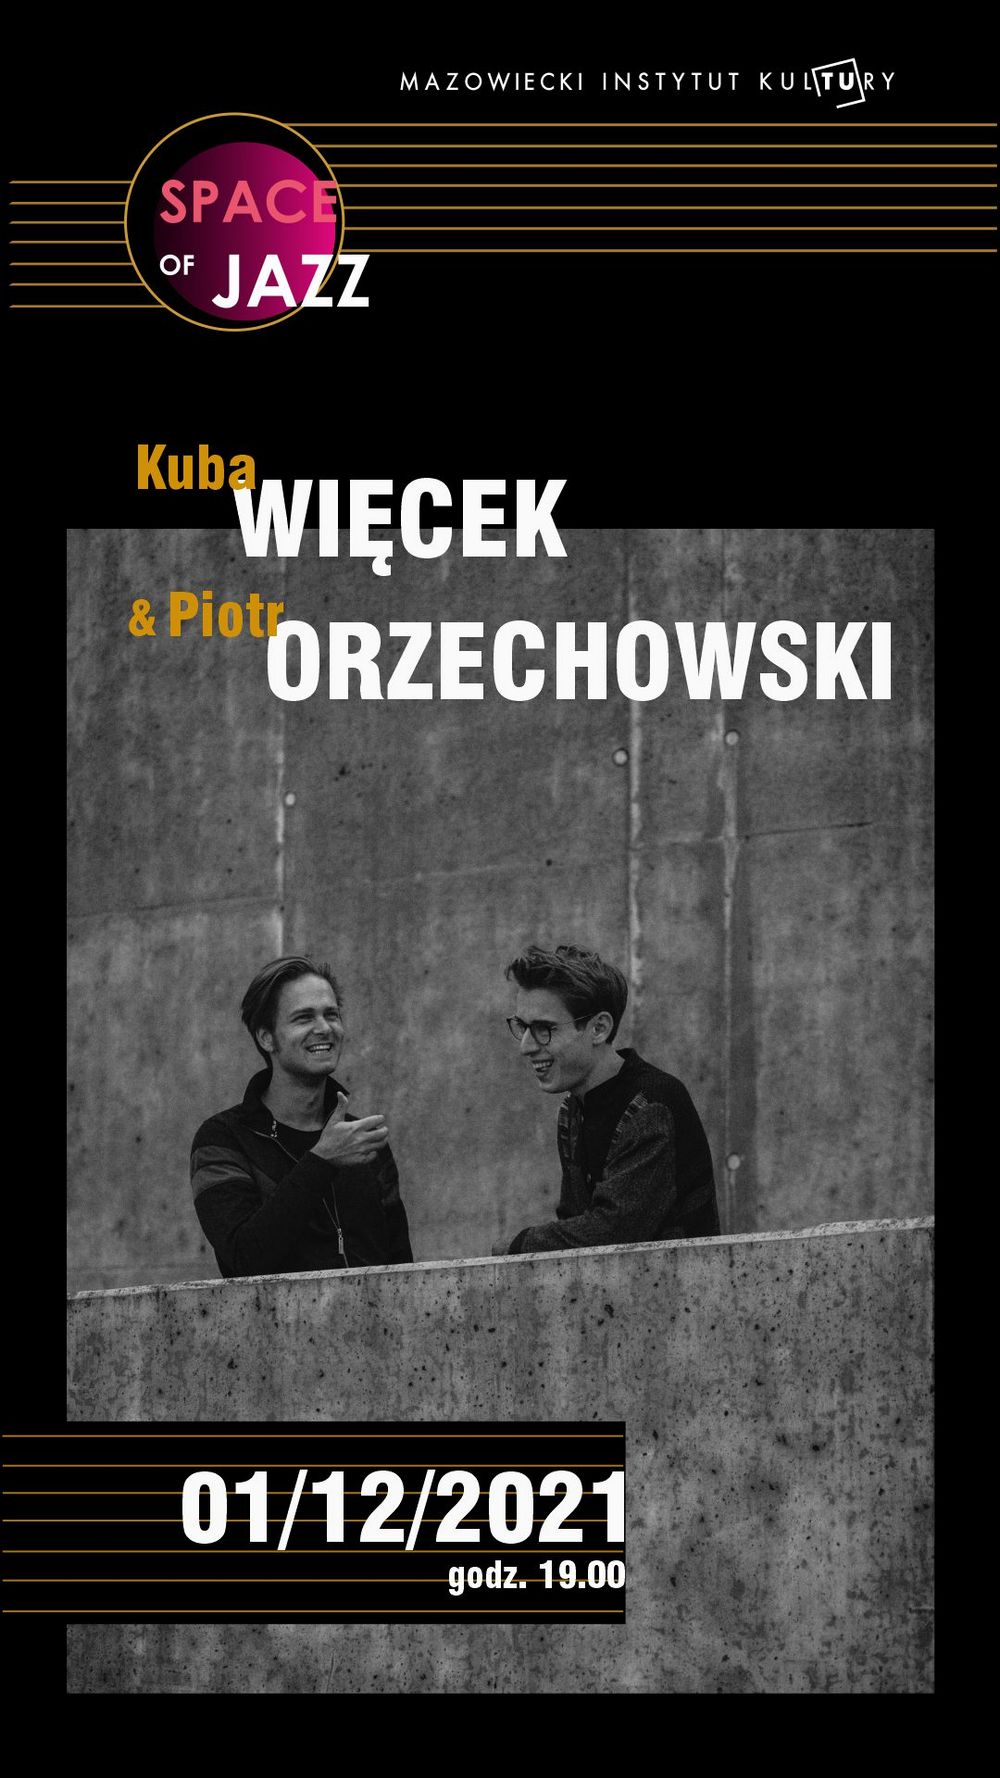 plakat: czarno białe zdjęcie dwóch mężczyzn rozmawiających i napis space of jazz